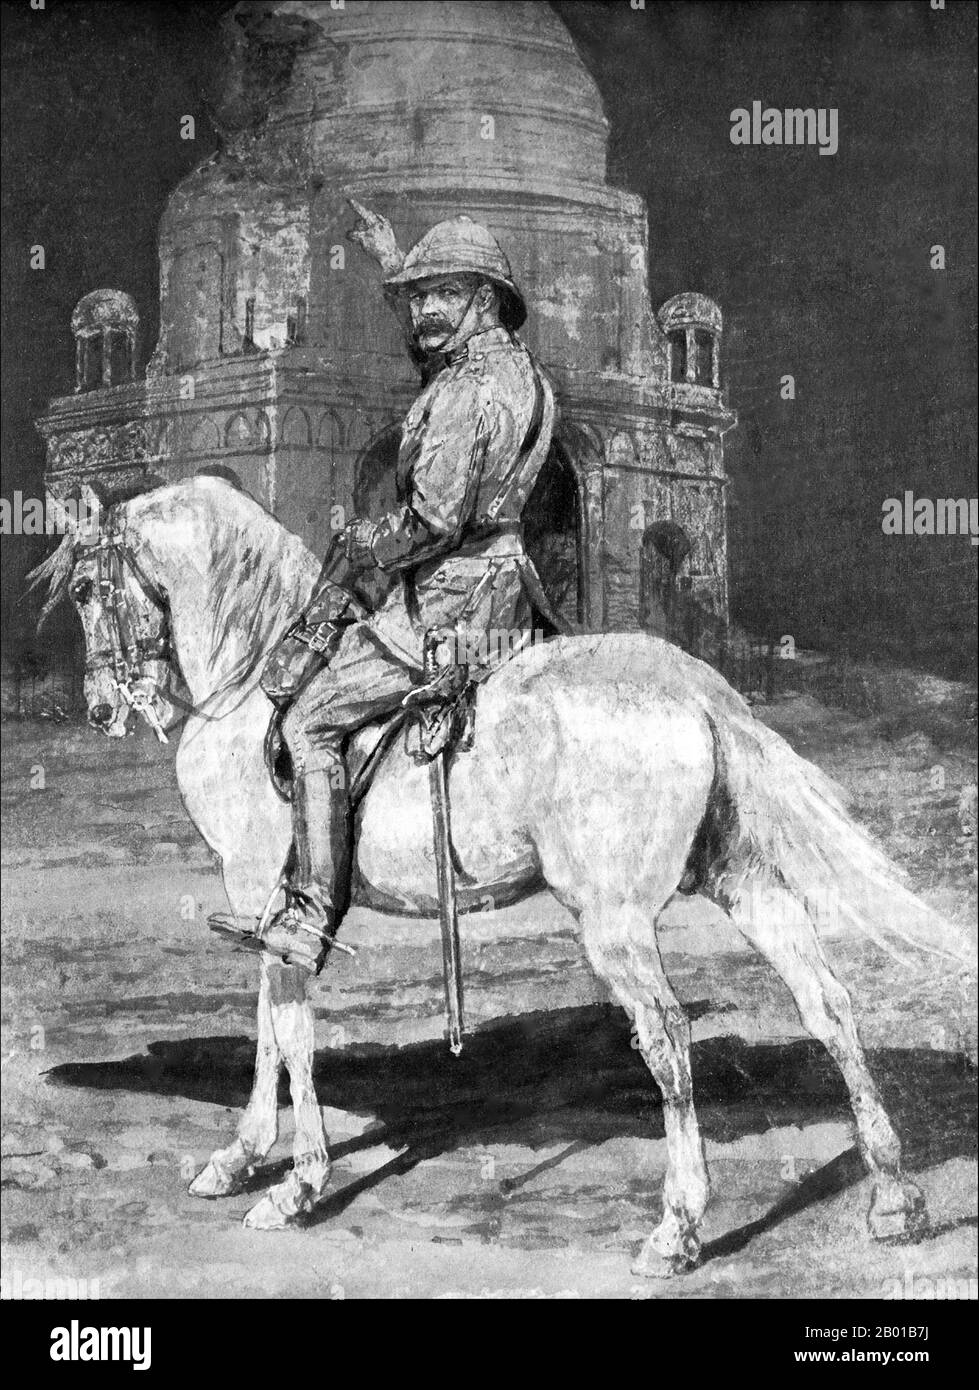 Royaume-Uni/Soudan: Field Marshal Horatio Herbert Kitchener (24 juin 1850 - 5 juin 1916), 1st Earl Kitchener, pointant sur la tombe du Mahdi, Omdurman, après qu'il l'ait ordonné de sauter. Illustration, 1898. Kitchener a gagné la renommée en 1898 pour avoir remporté la bataille d'Omdurman et obtenu le contrôle du Soudan, après quoi il a reçu le titre de "Lord Kitchener de Khartoum". En tant que chef d'état-major (1900-1902) pendant la Seconde Guerre des Boers, il a joué un rôle clé dans la conquête des républiques des Boers par Lord Roberts, puis a succédé à Roberts comme commandant en chef. Banque D'Images